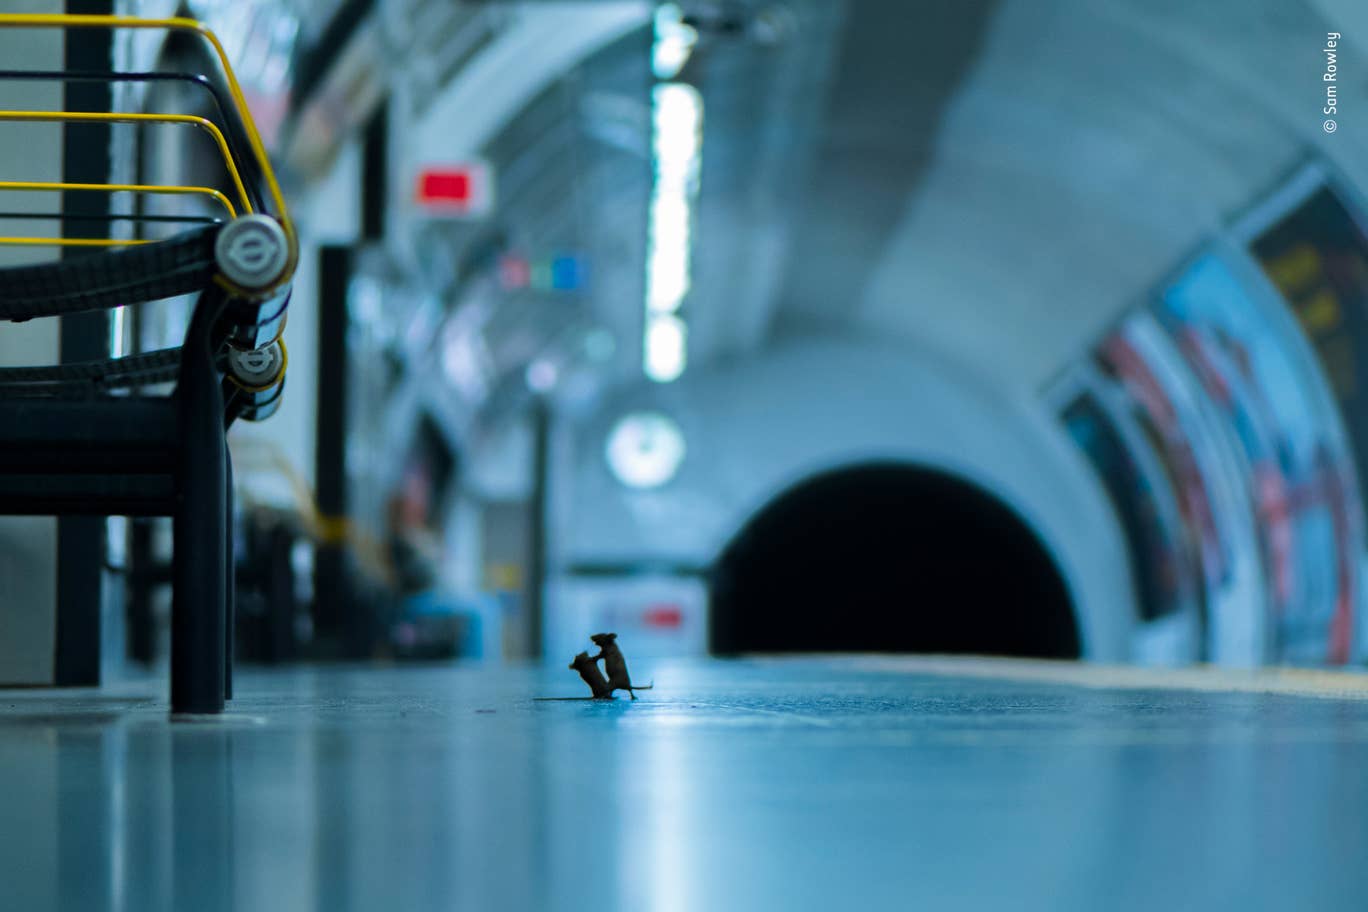 Фото года: снимок драки мышей в лондонском метро выбрали лучшим, фото — Wildlife Photography of the Year 2019